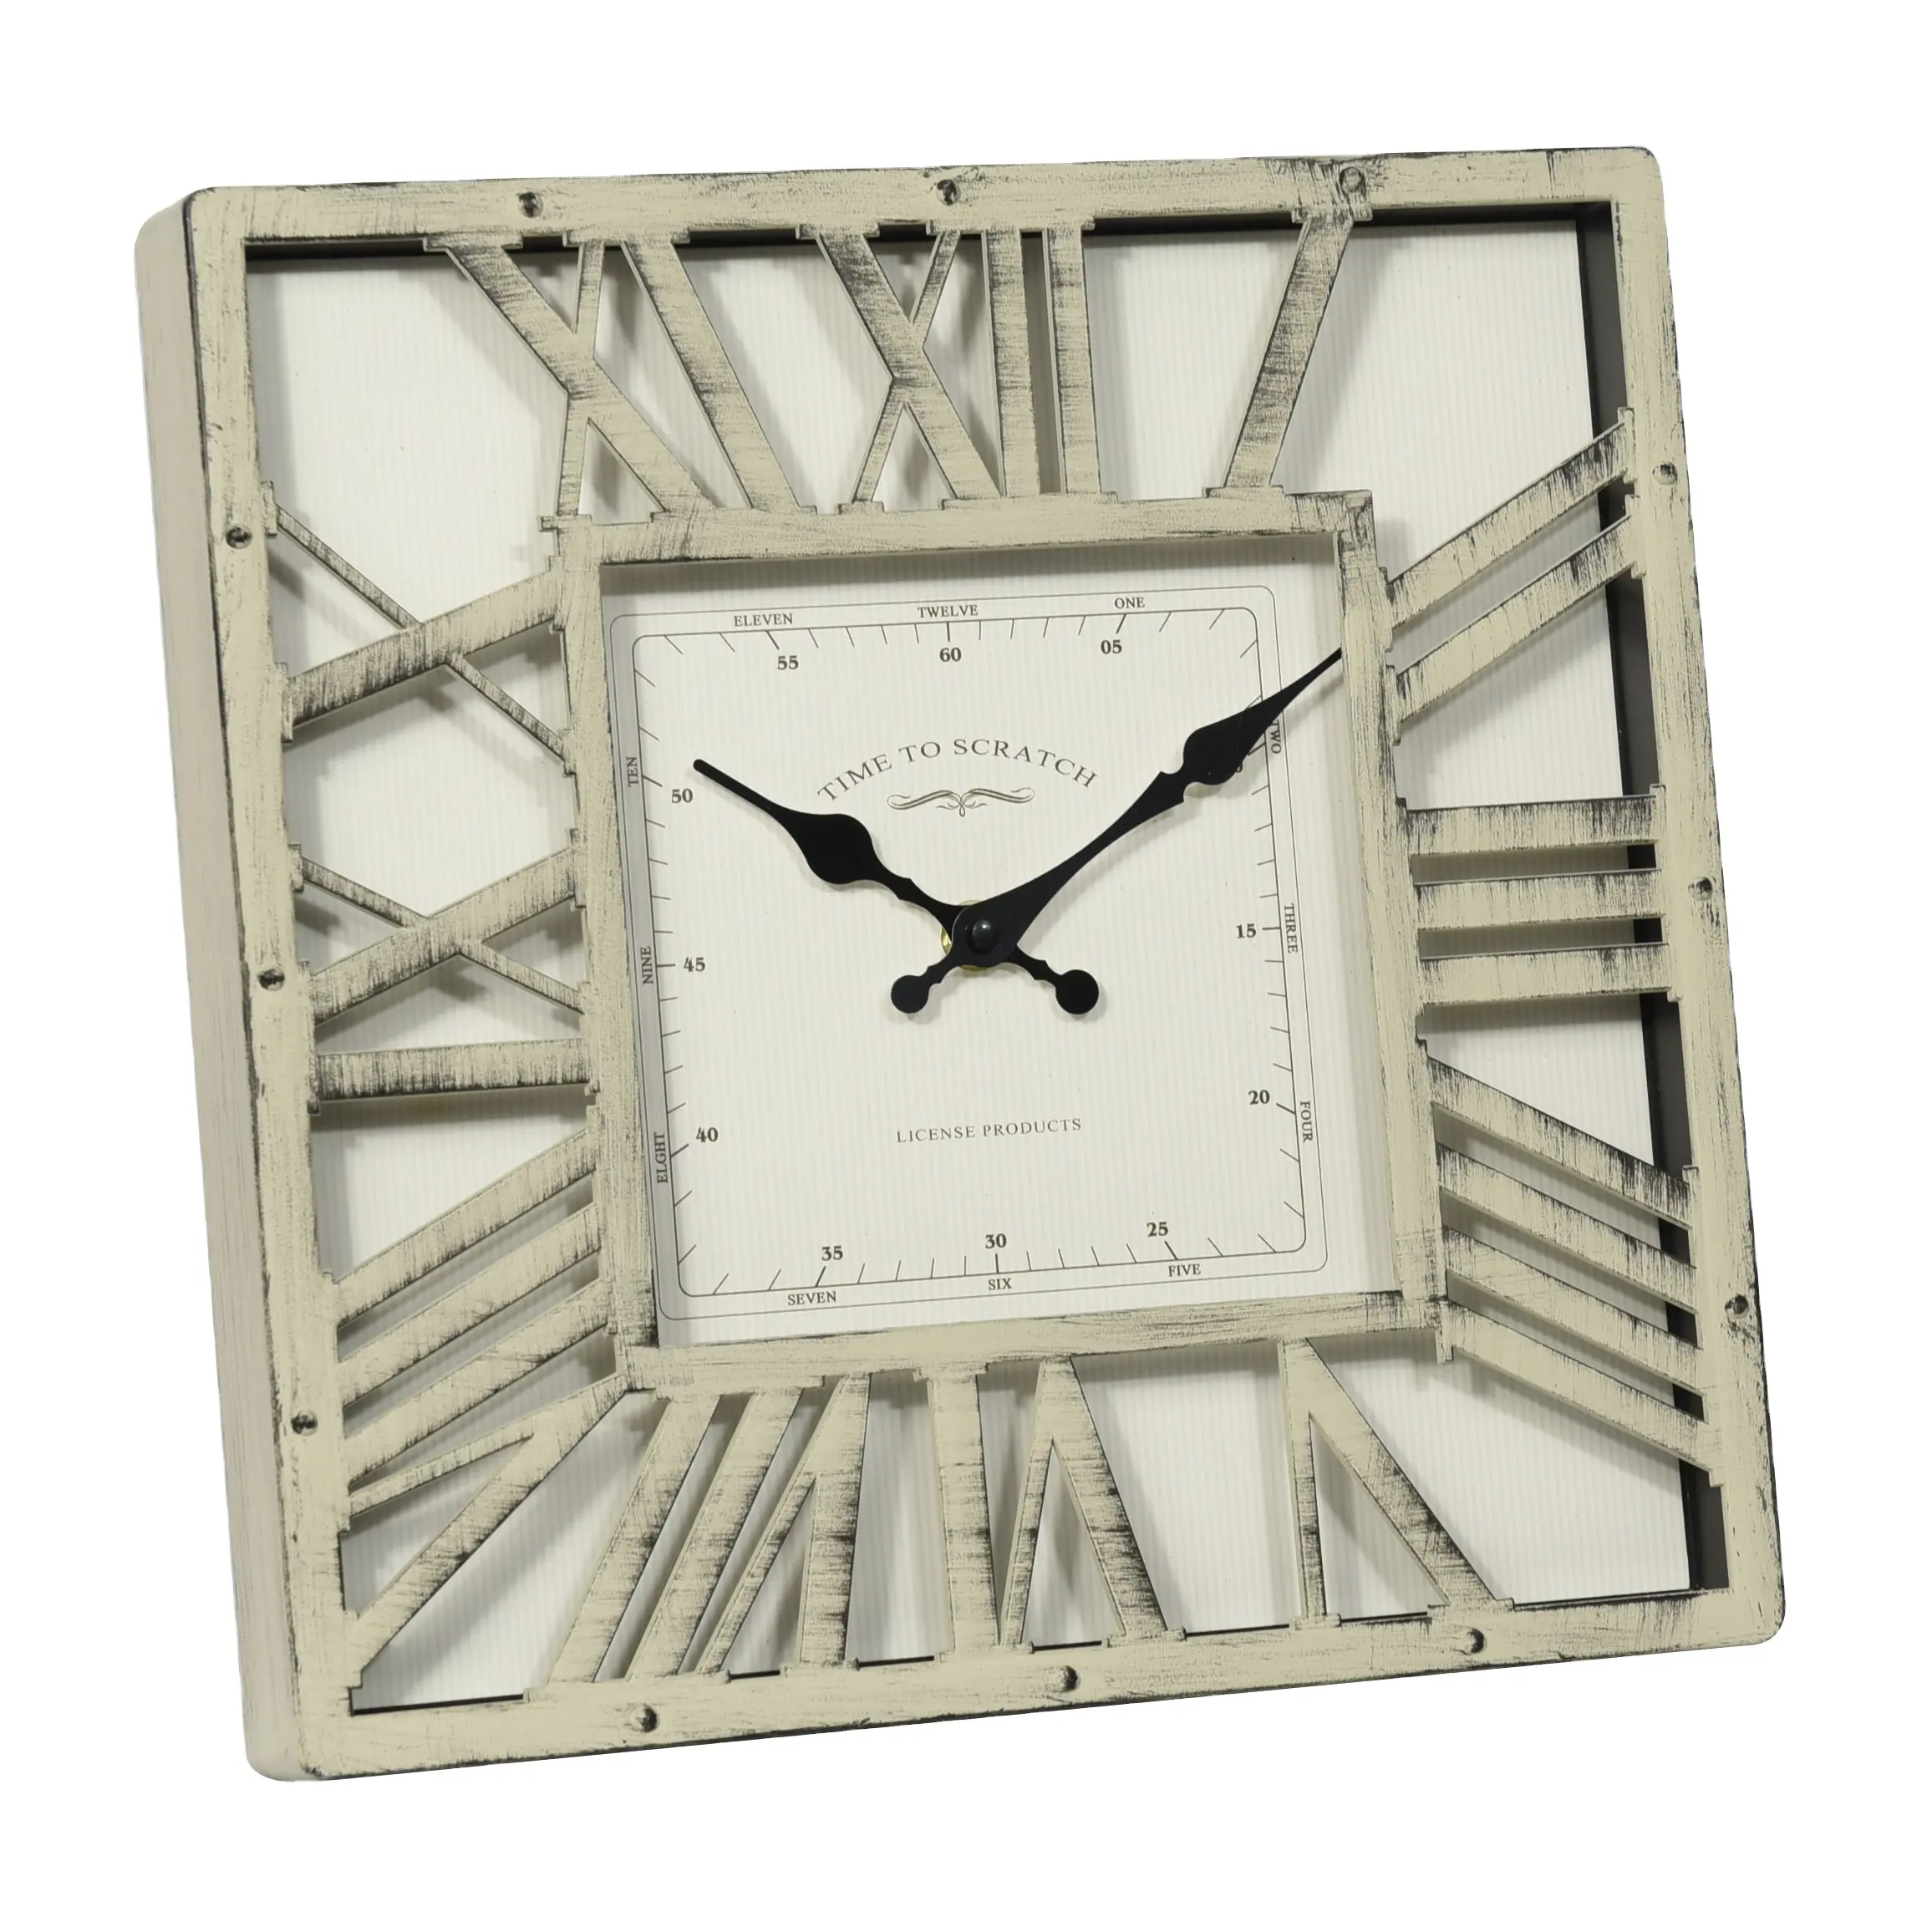 ساعة حائط مربعة بلاستيكية عالية الجودة مقاس 12 بوصة بأرقام رومانية بتصميم جديد